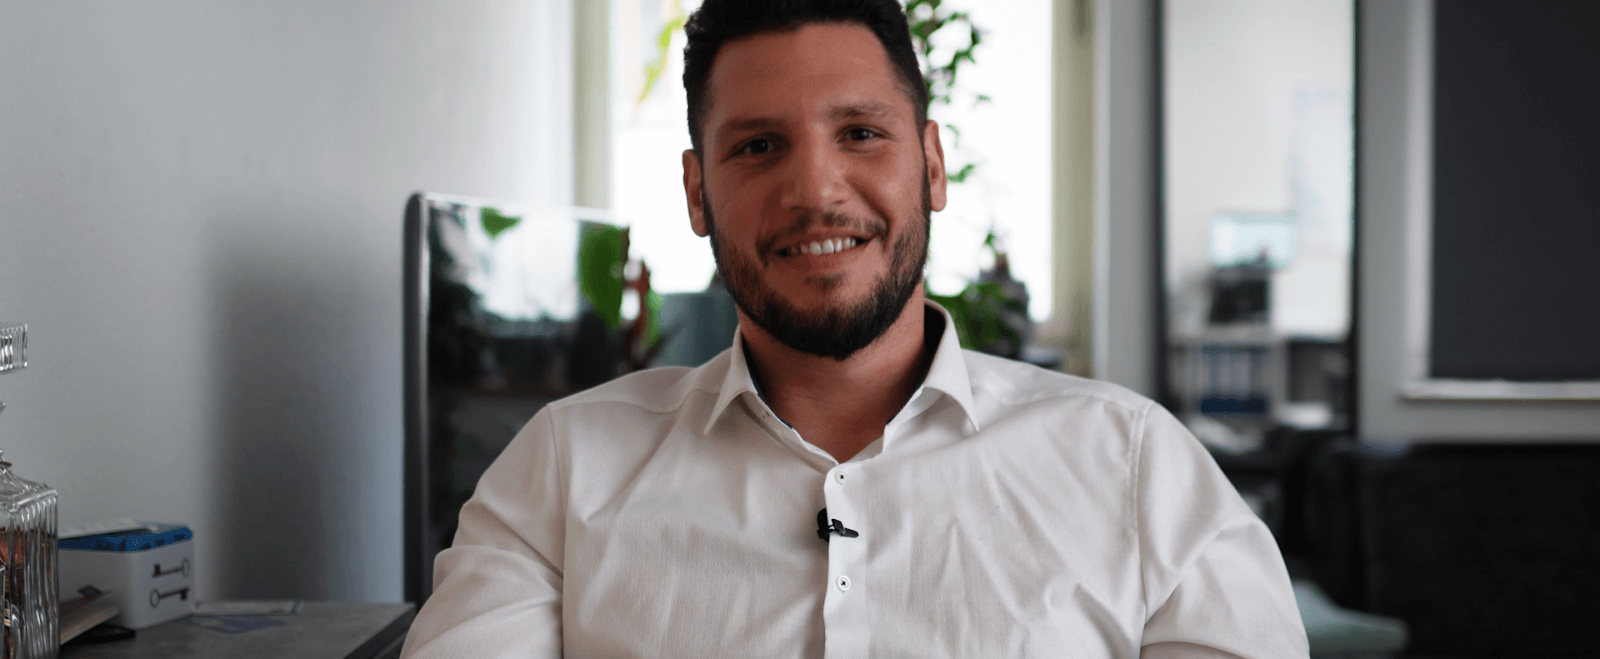 Kerim Jemai im Interview: Der Unternehmer erzählt von seinen Erfahrungen mit dem Lohnprogramm von lexoffice